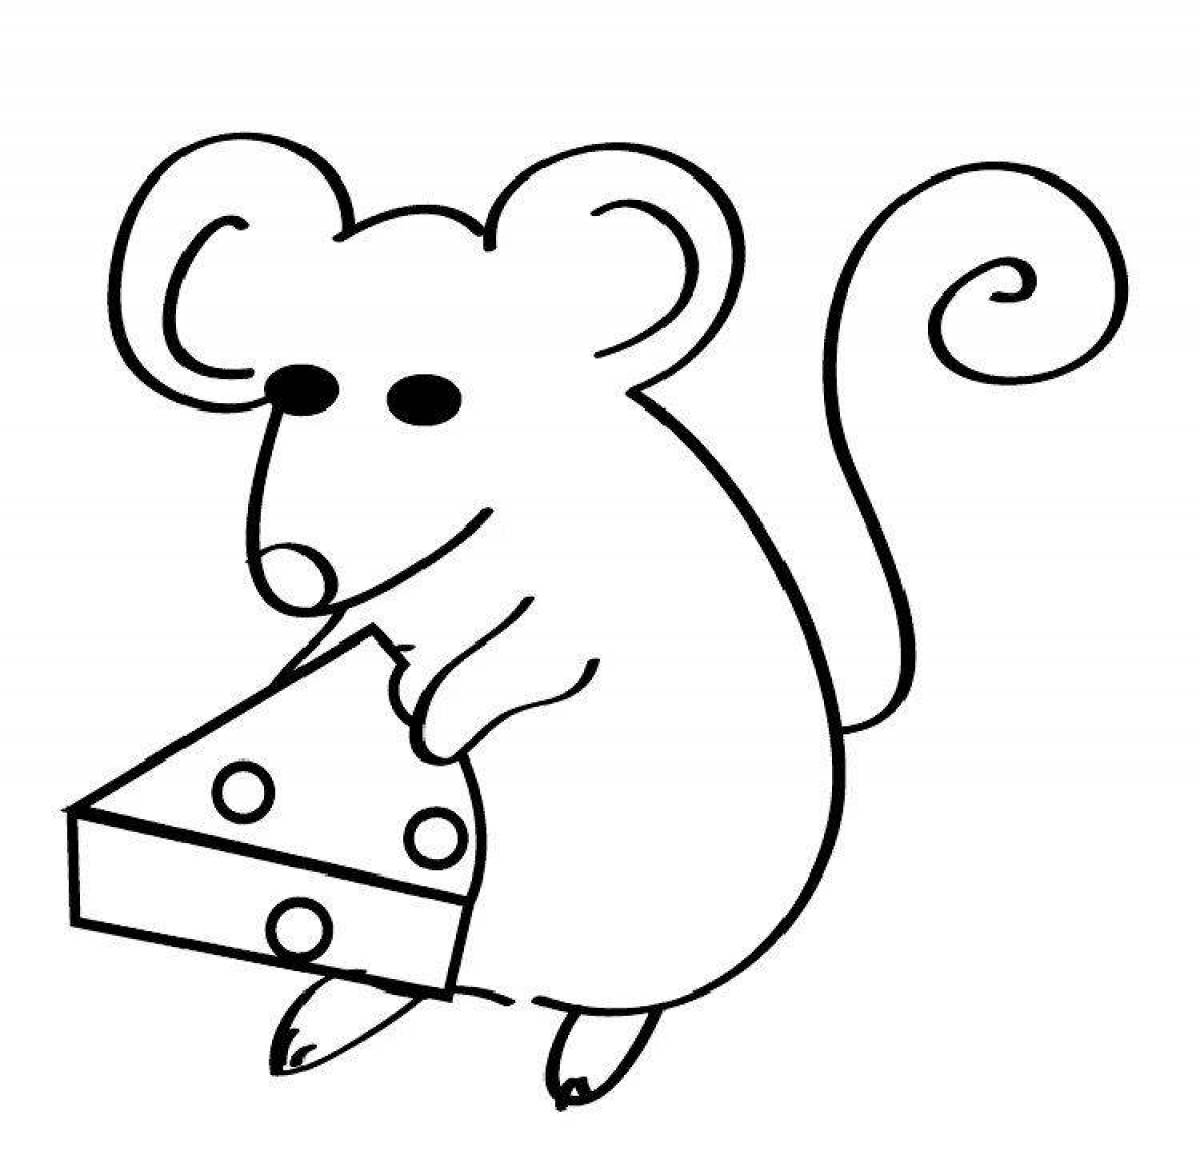 Раскраска мышь распечатать. Мышь раскраска для детей. Мышка контур для детей. Мышка для раскрашивания детям. Мышка раскраска для детей.